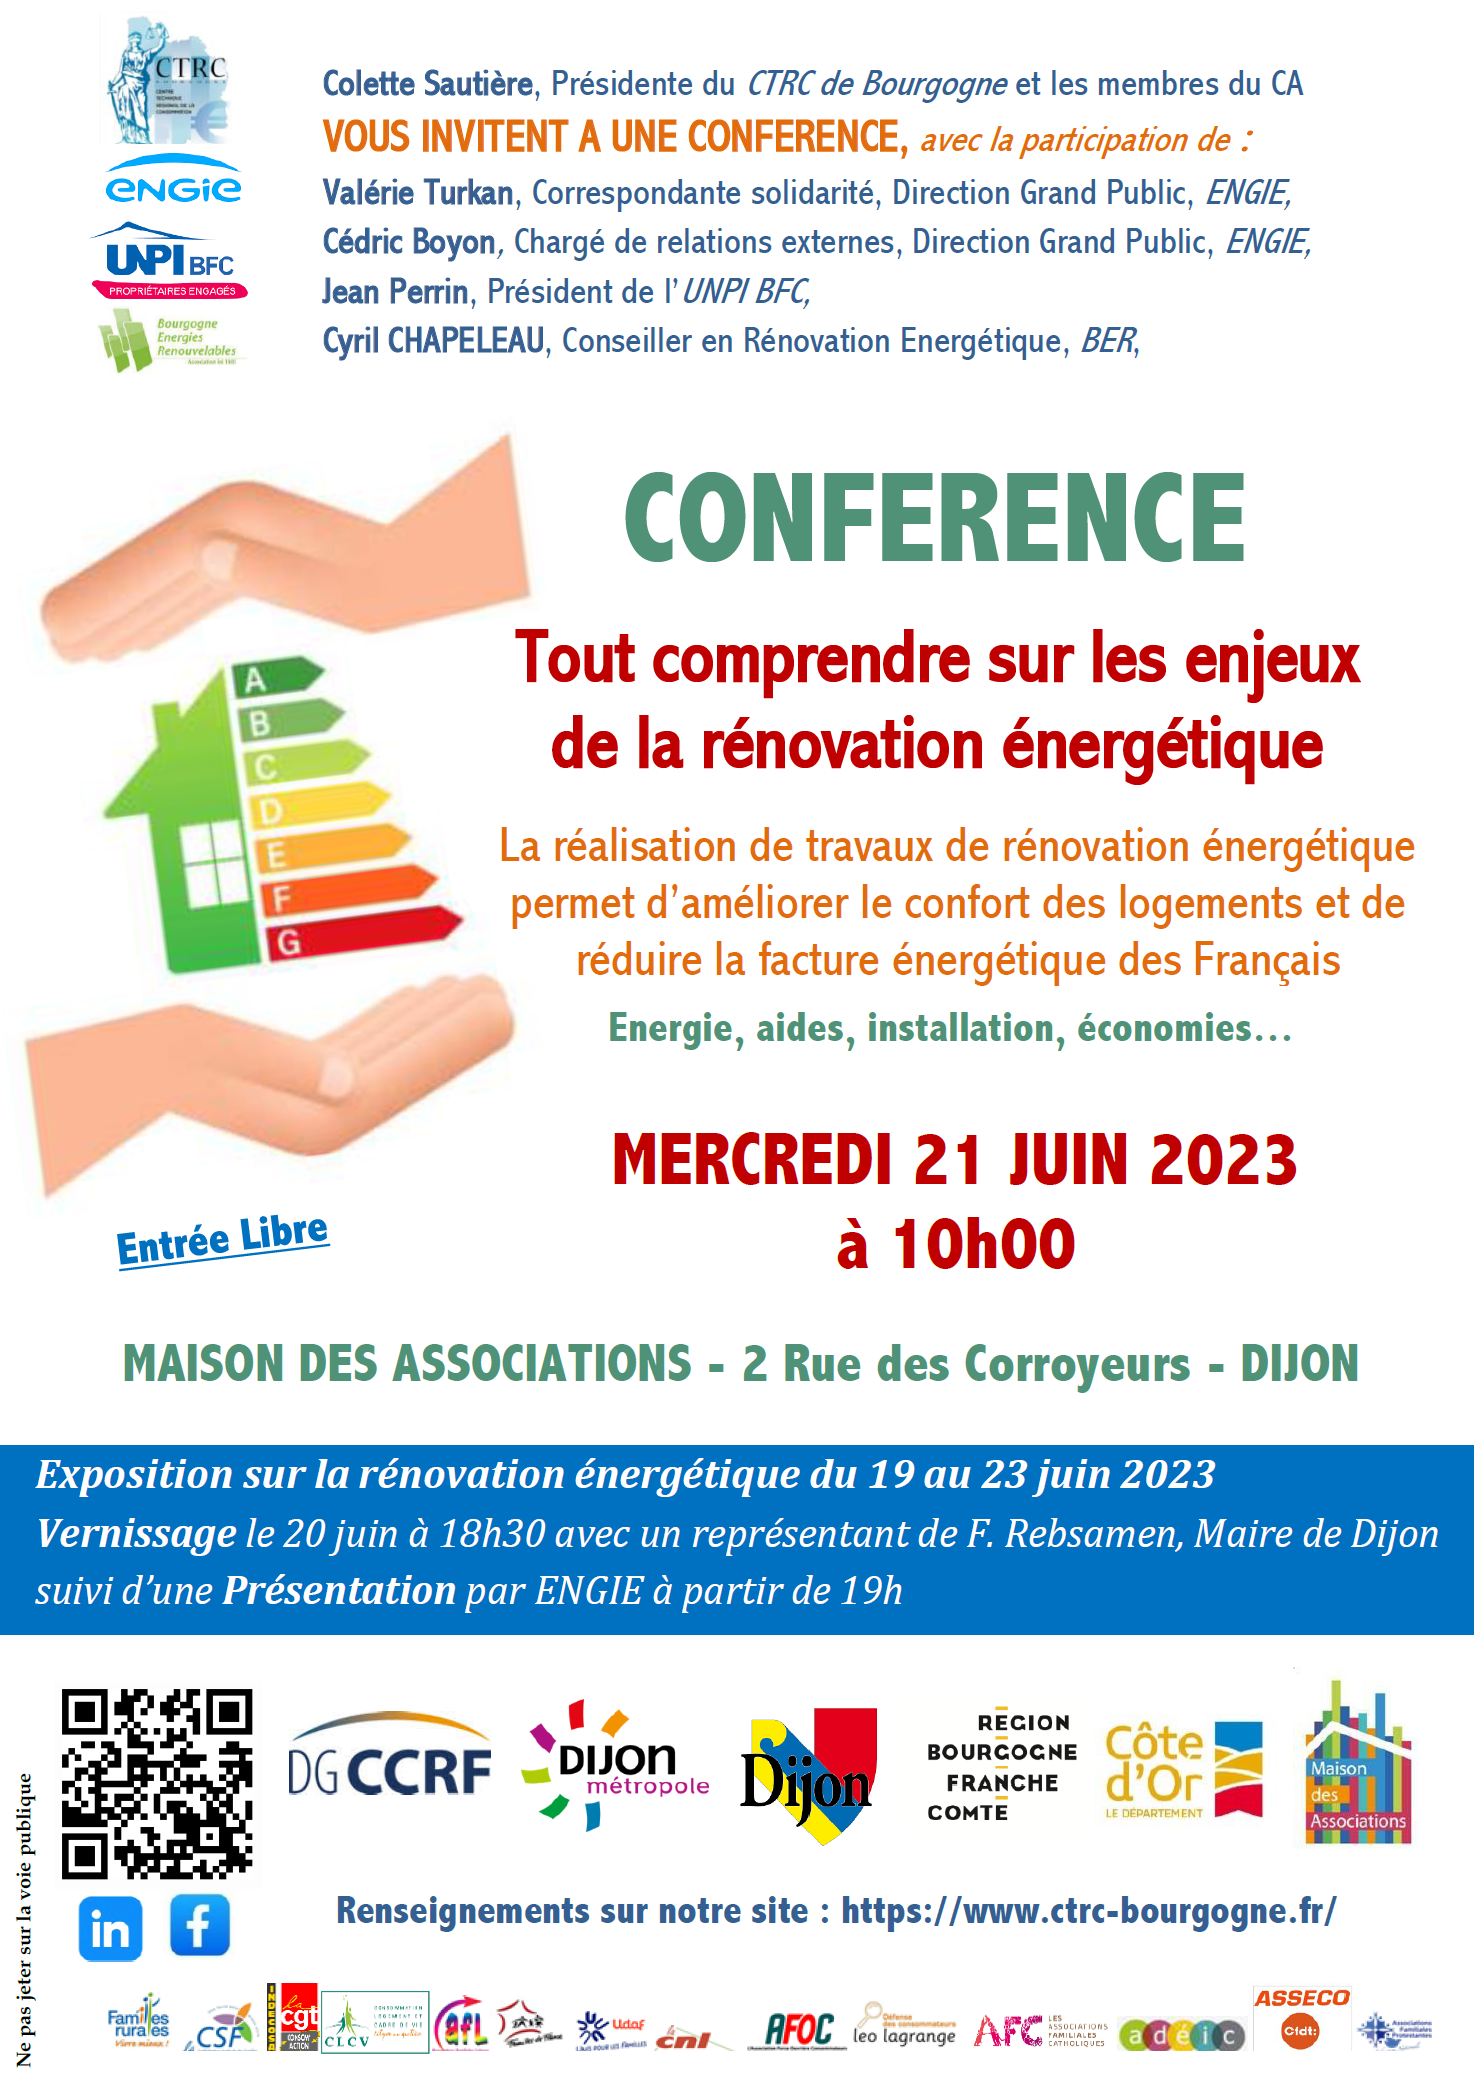 Colette Sautière, Présidente du CTRC de Bourgogne, avec la participation d'ENGIE, l'UNPI et BER, vous invitent à une conférence "Tout comprendre sur les enjeux de la rénovation énergétique le mercredi 21 juin 2023 à 10h, à la Maison des Associations de Dijon. Entrée Libre